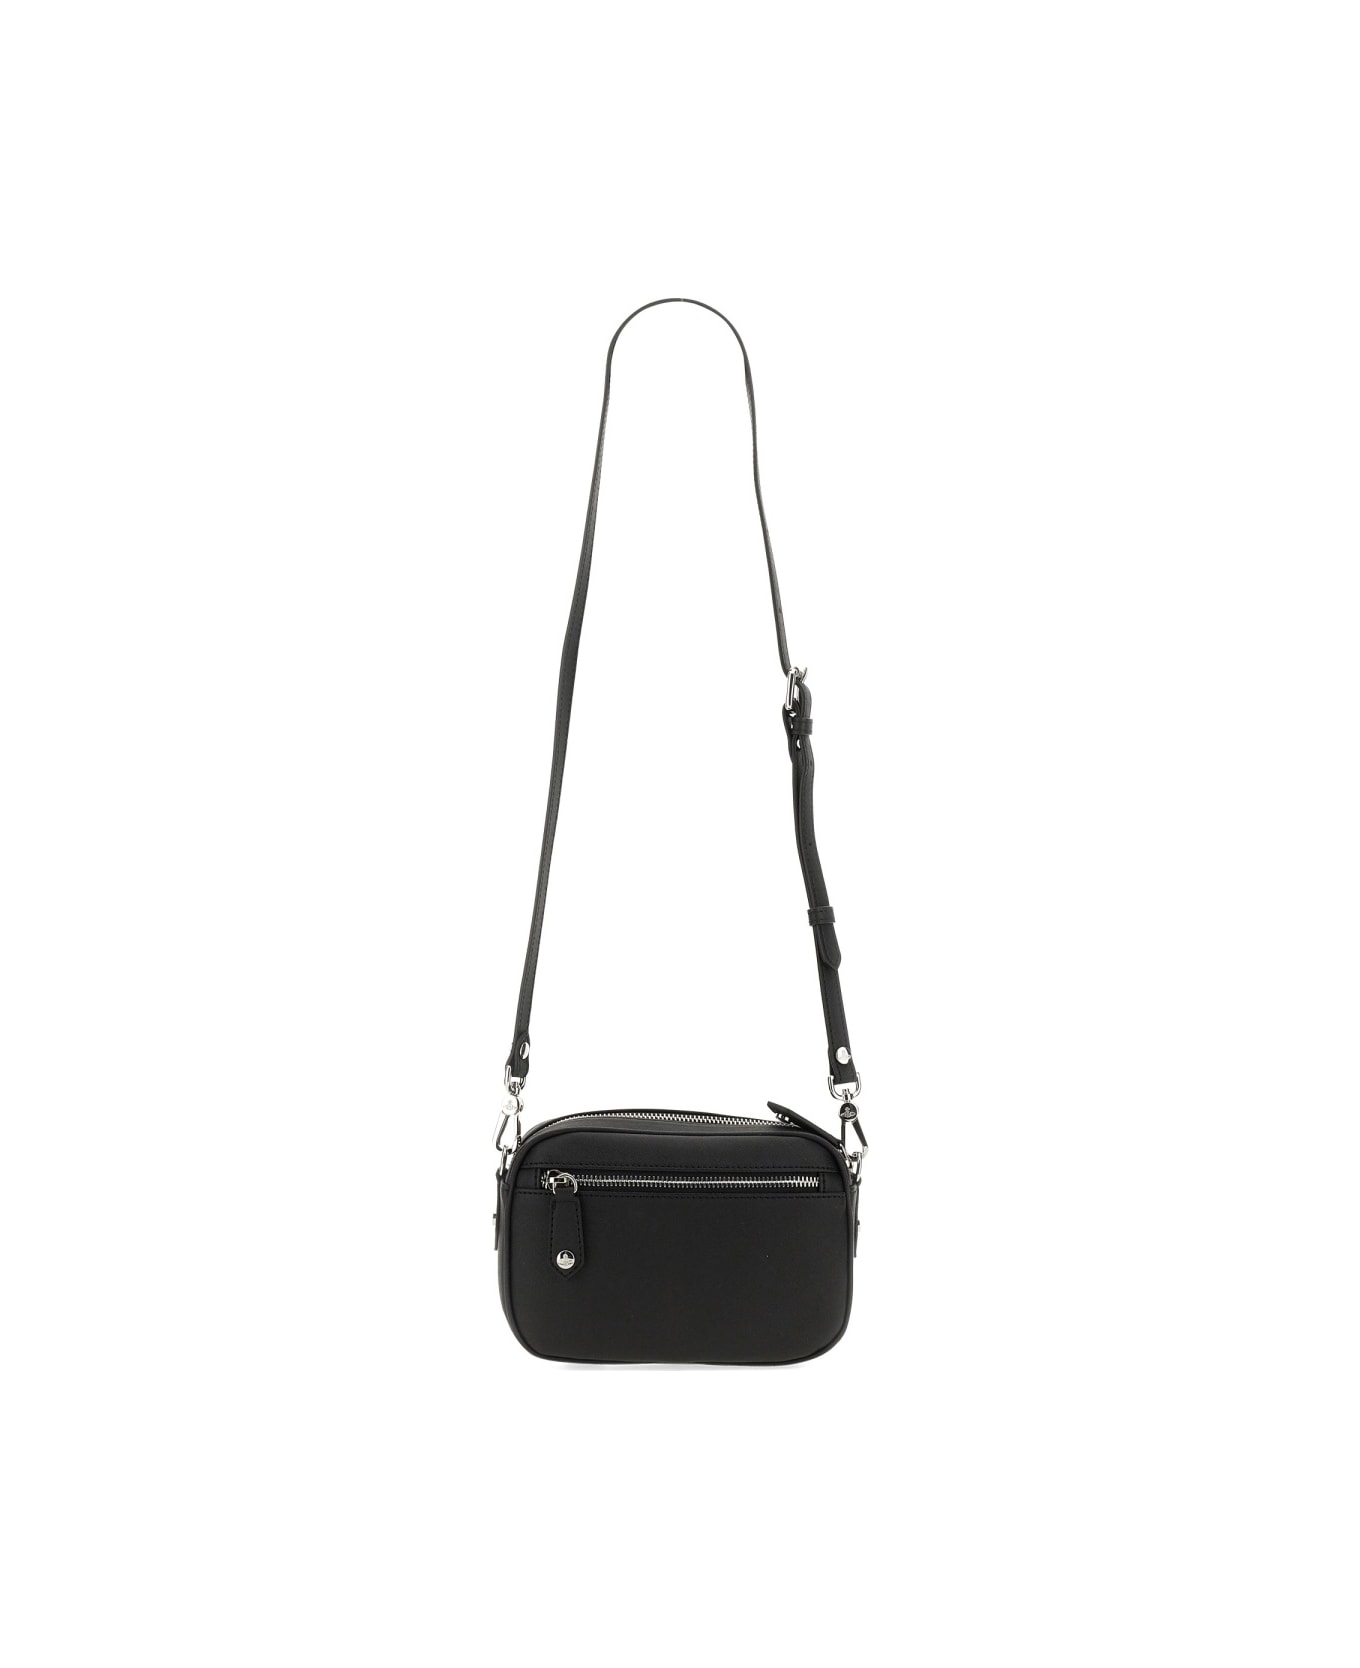 Vivienne Westwood Room Bag "anna" - BLACK ショルダーバッグ